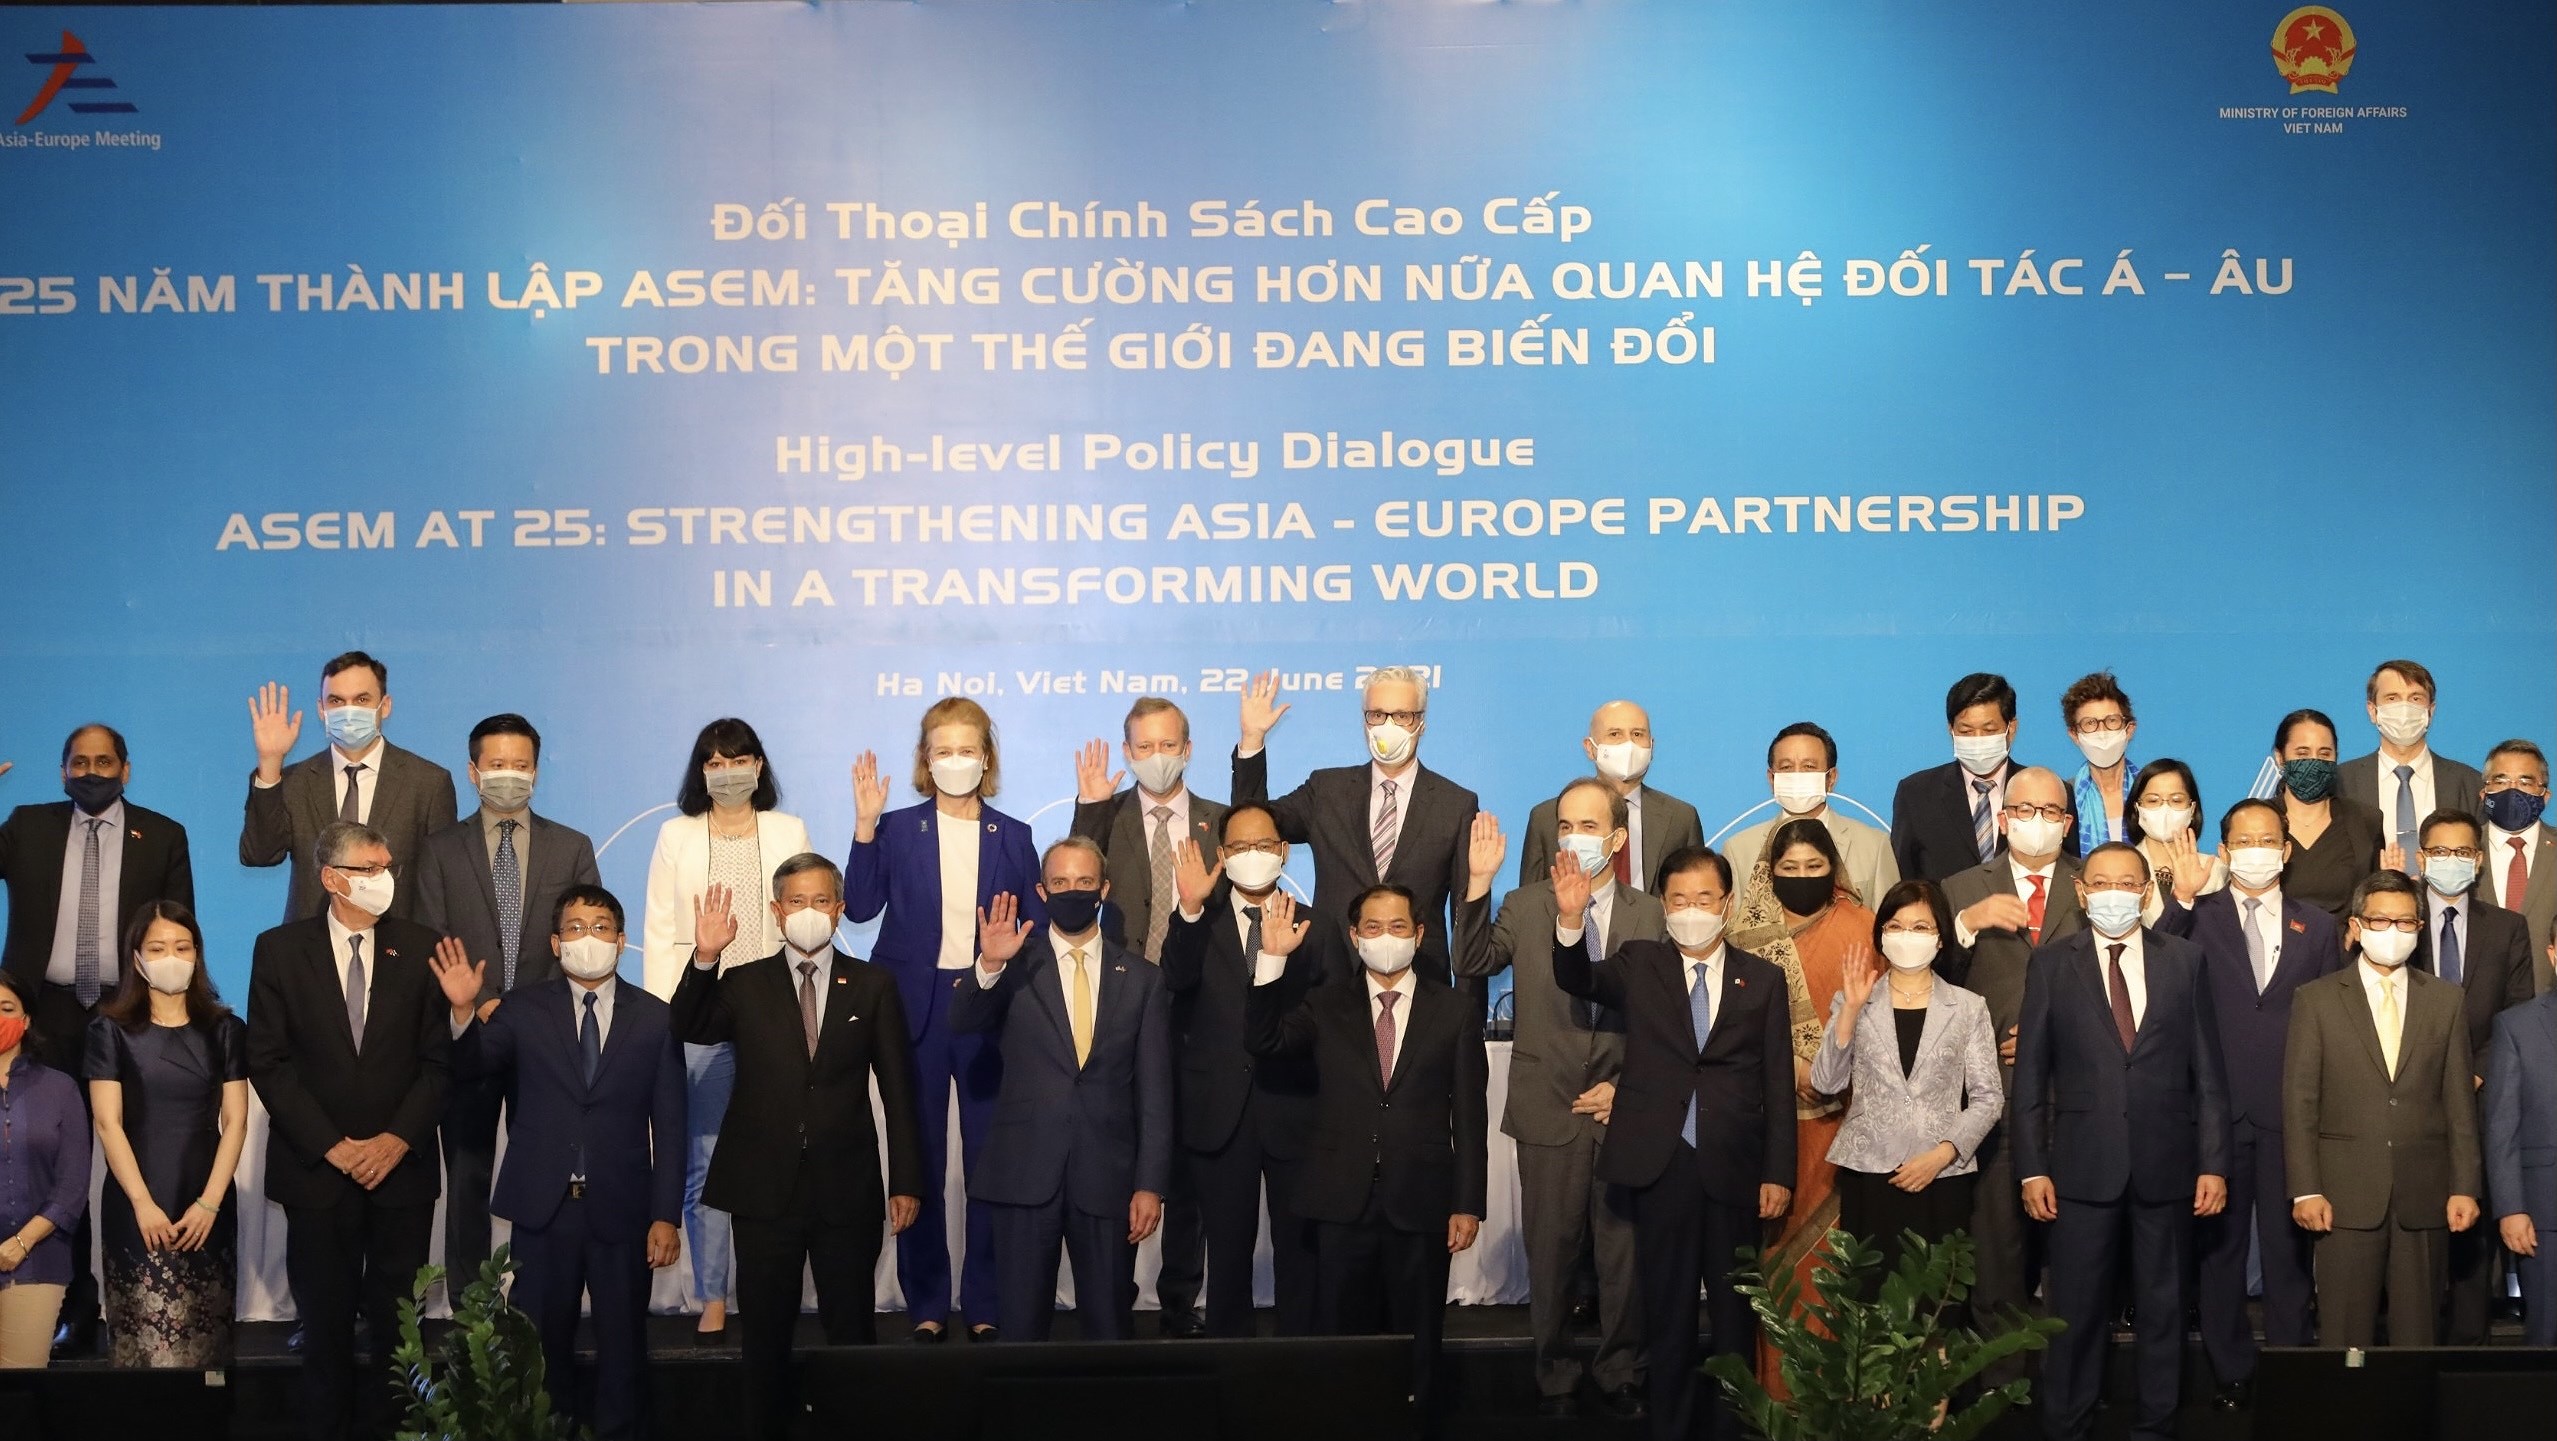 Политическии диалог АСЕМ - «25-я годовщина АСЕМ: укрепляя партнерство между Азиеи и Европои в трансформирующемся мире» hinh anh 1